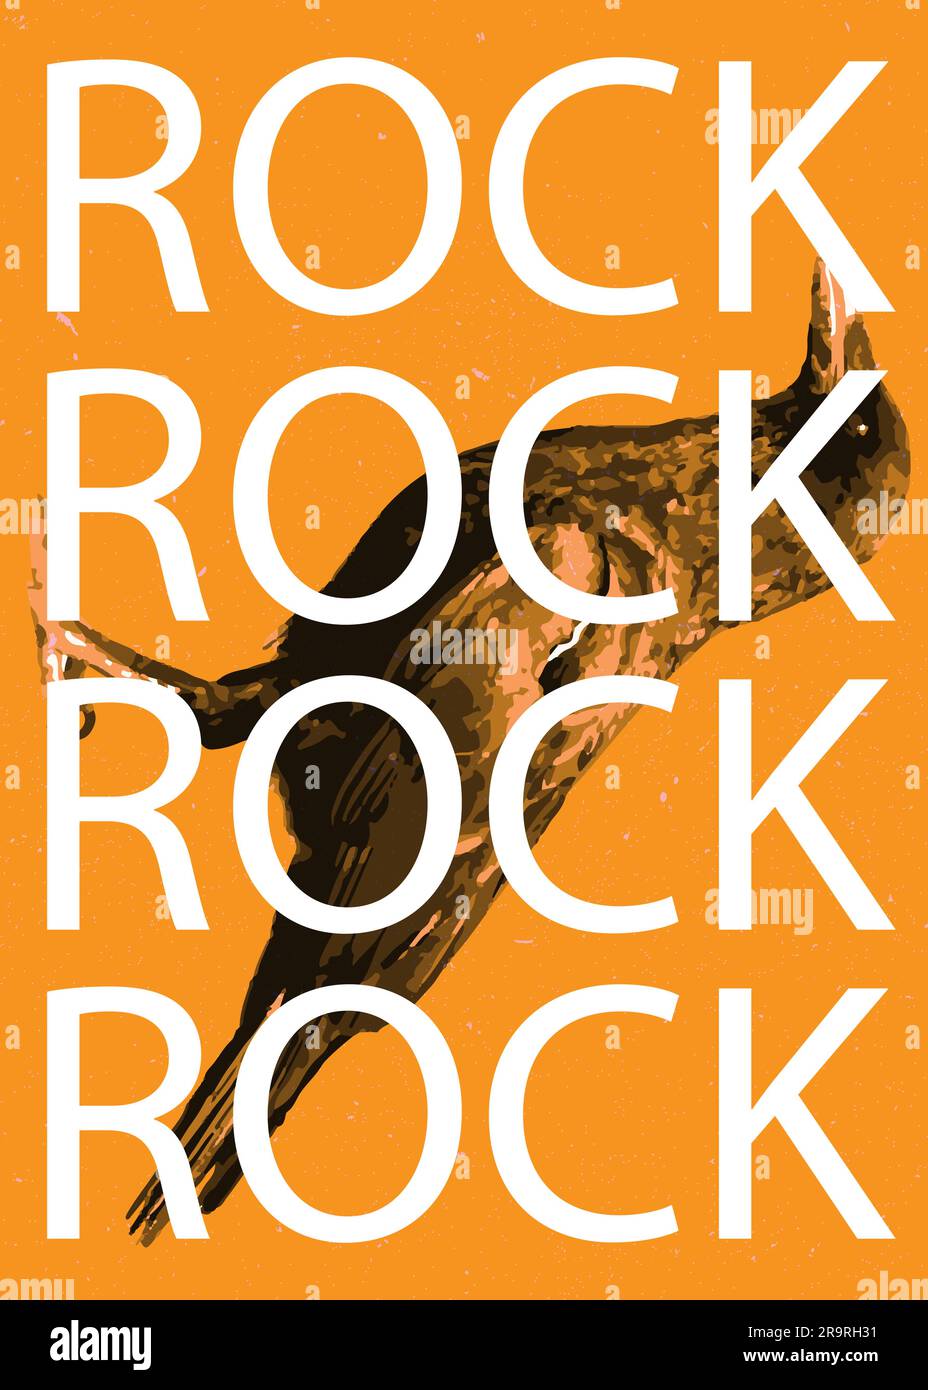 Poster Rock N Roll: Técnicas de grabado digital